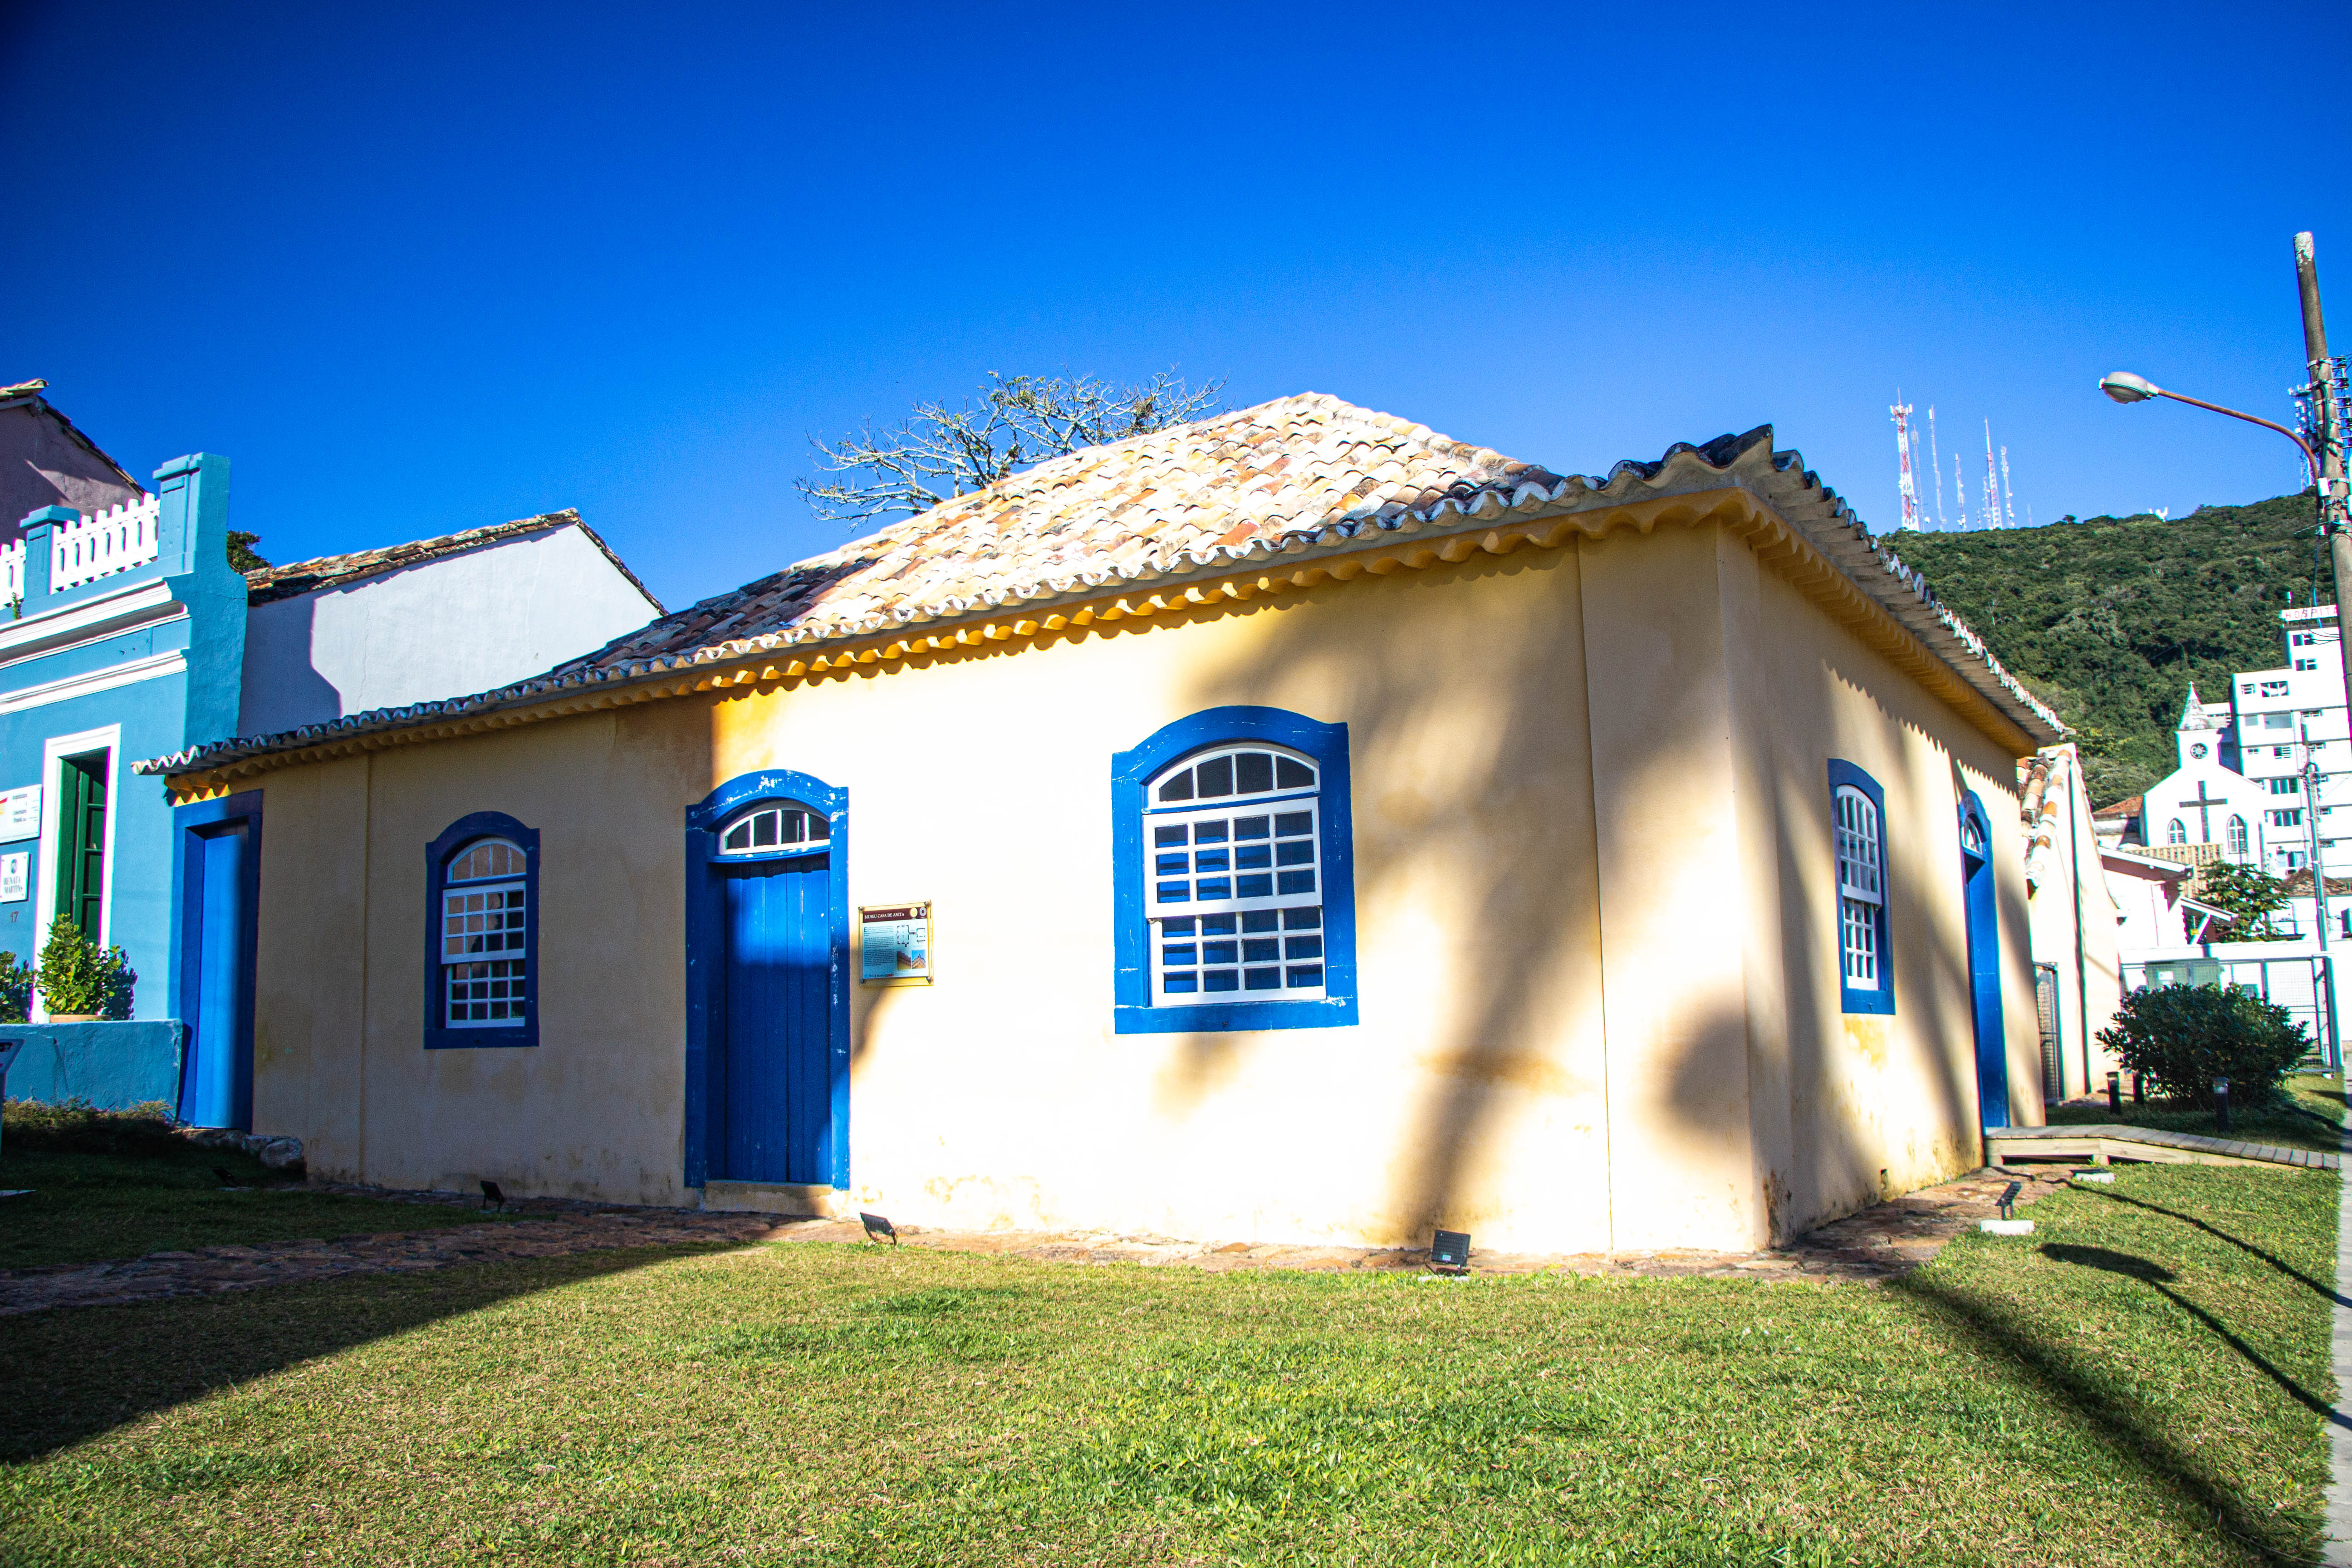 LAGUNA: Casa de Anita Garibaldi